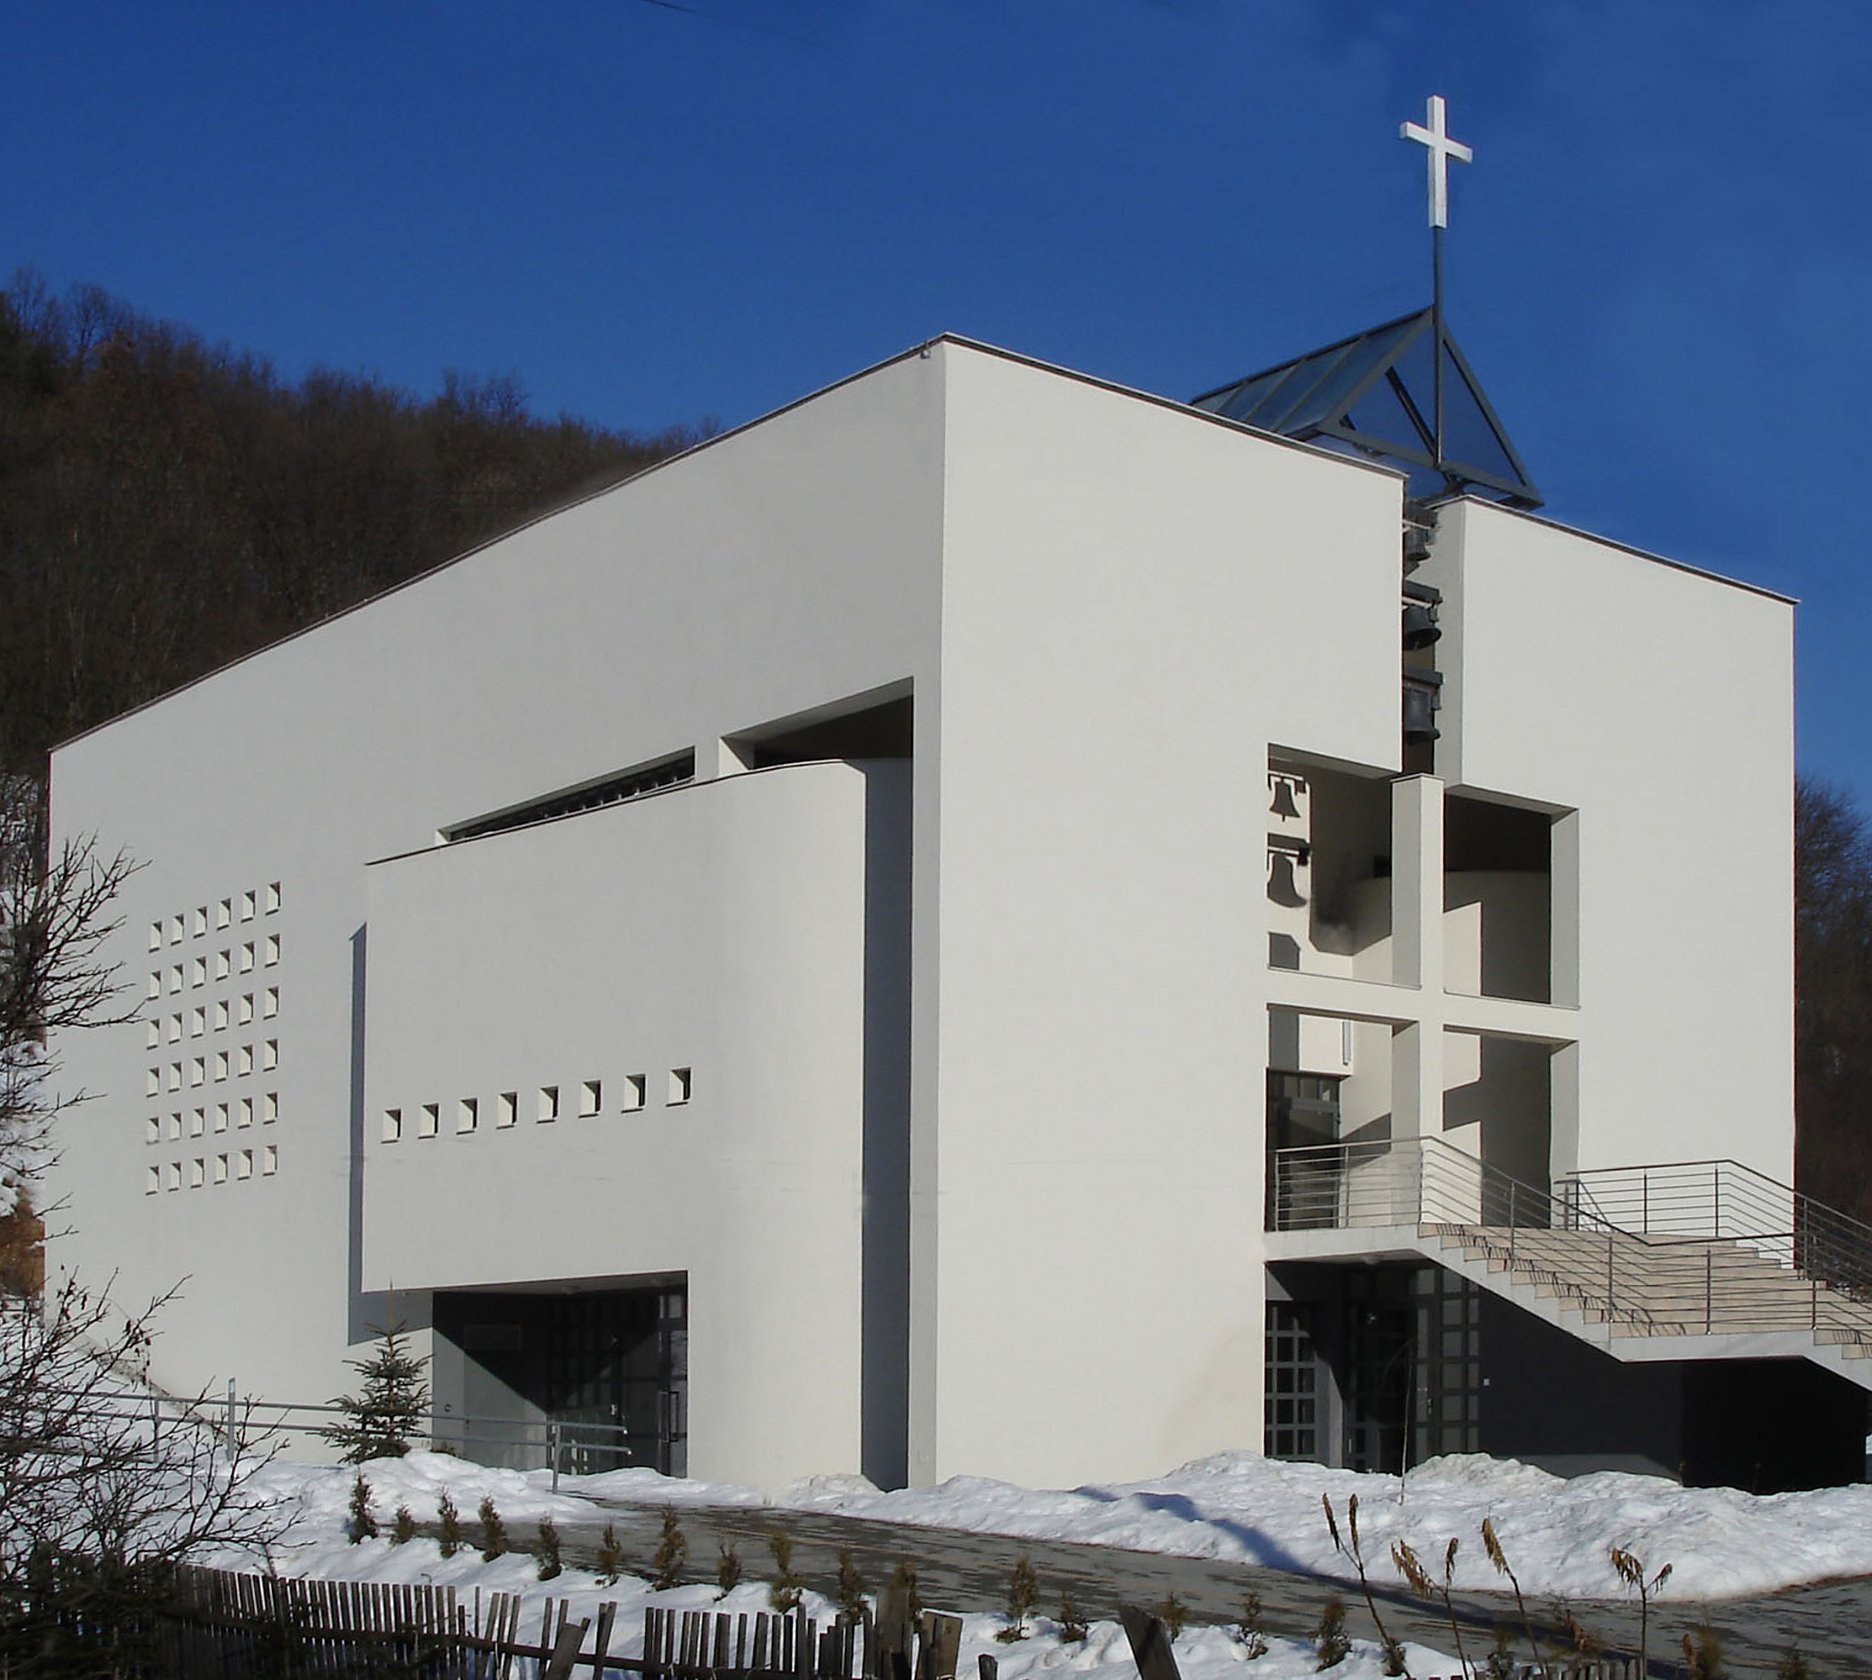 Rímskokatolícky kostol narodenia Panny Márie vo Vígľaši (2003 -2005)